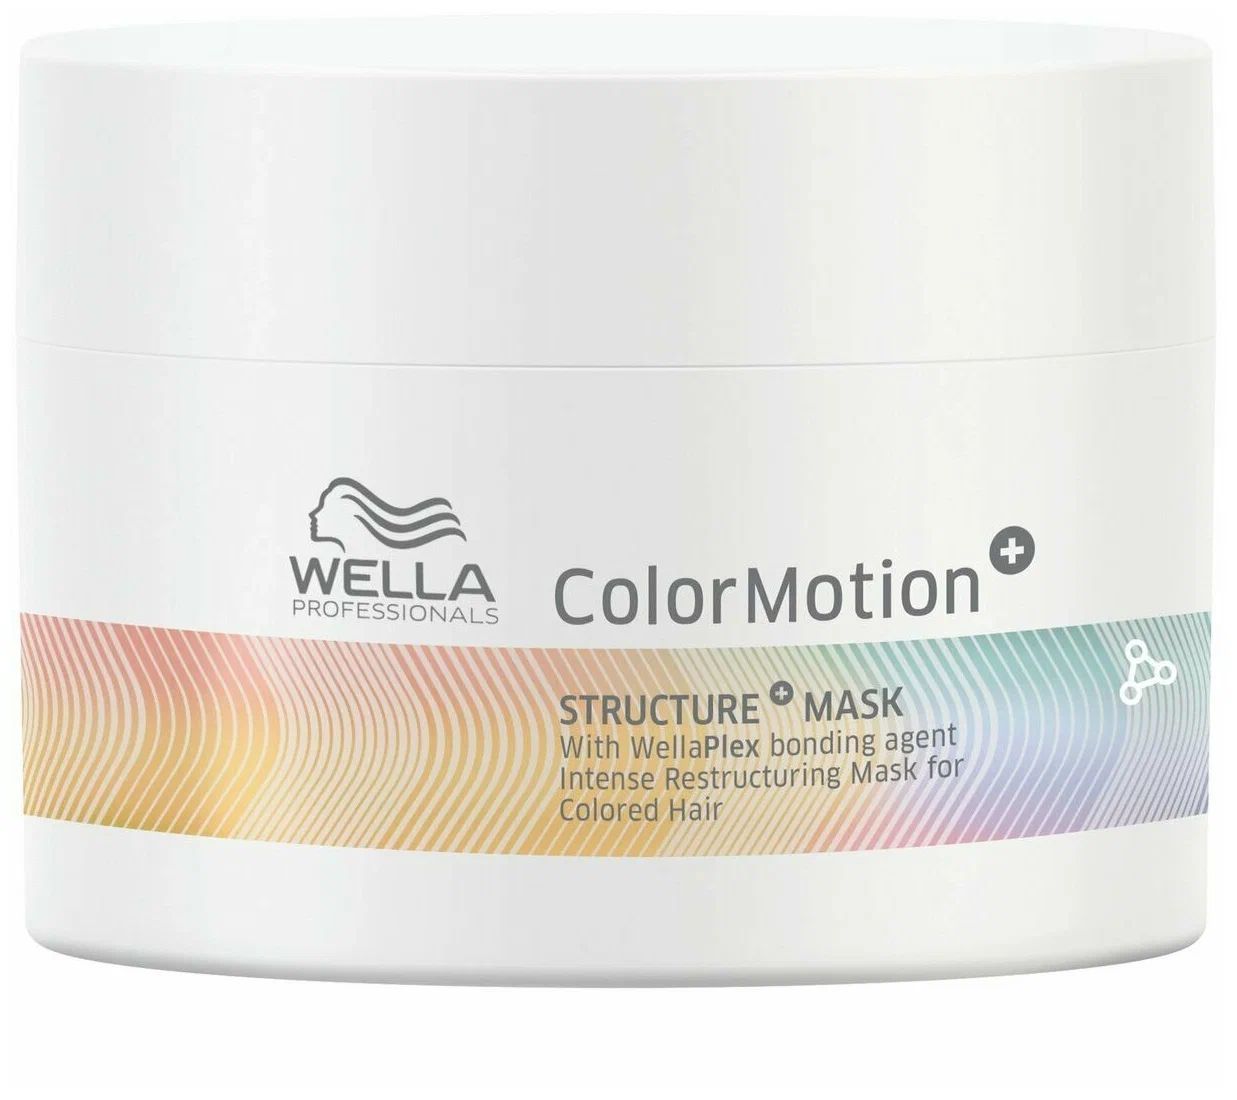 Маска Wella Color Motion Structure Mask для интенсивного восстановления волос 150 мл wella professionals маска для восстановления окрашенных волос color motion structure mask